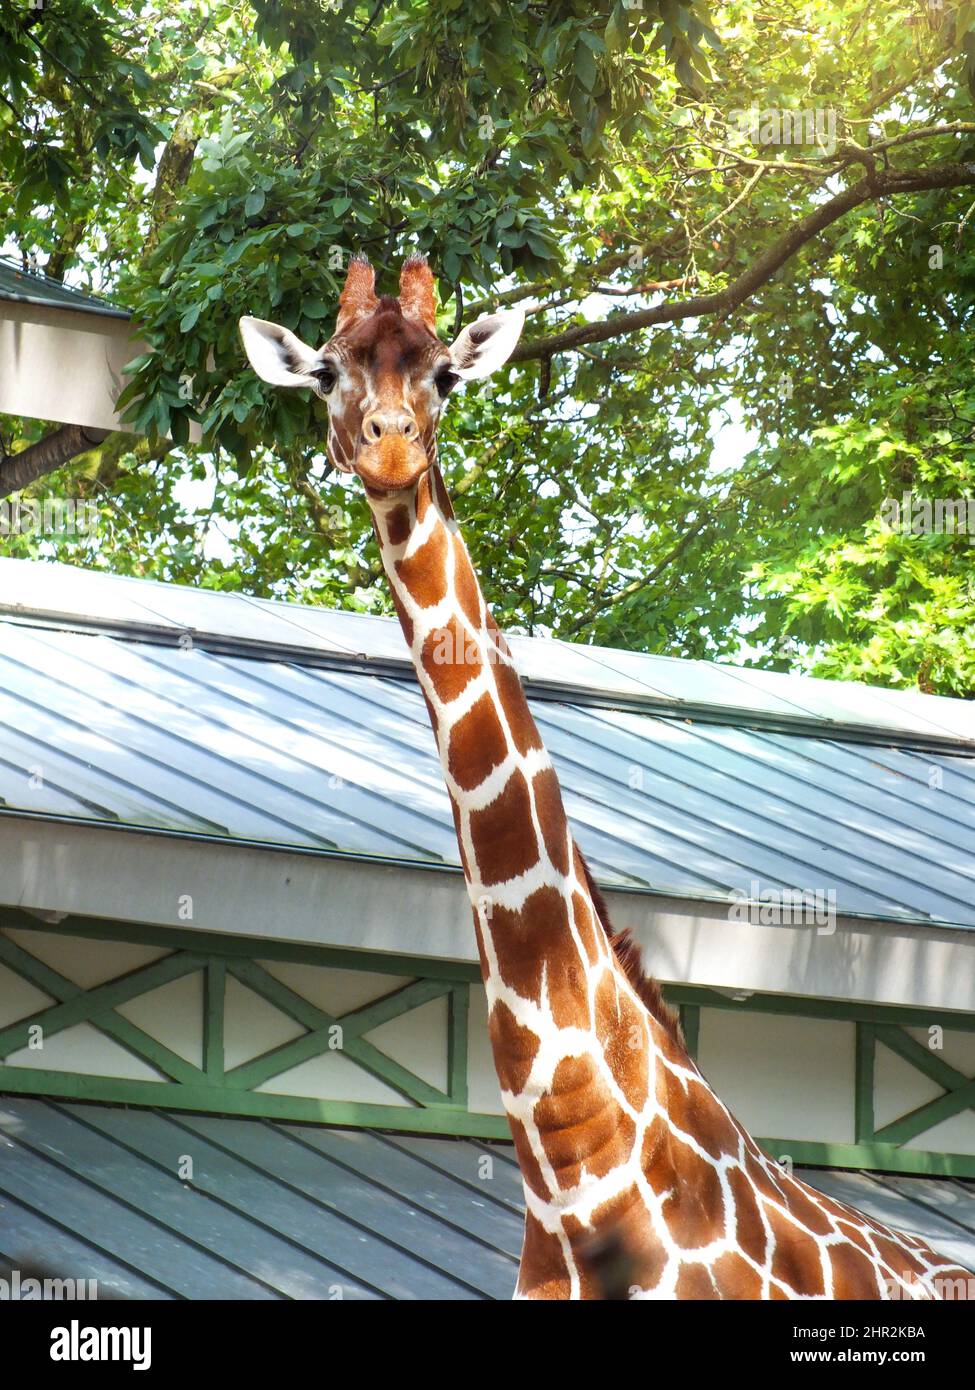 Giraffe-Porträt-Foto mit grünen Blättern Hintergrund, nette glückliche Giraffa in einem Zoo geschossen, hohe Tier in die Kamera schauen Stockfoto